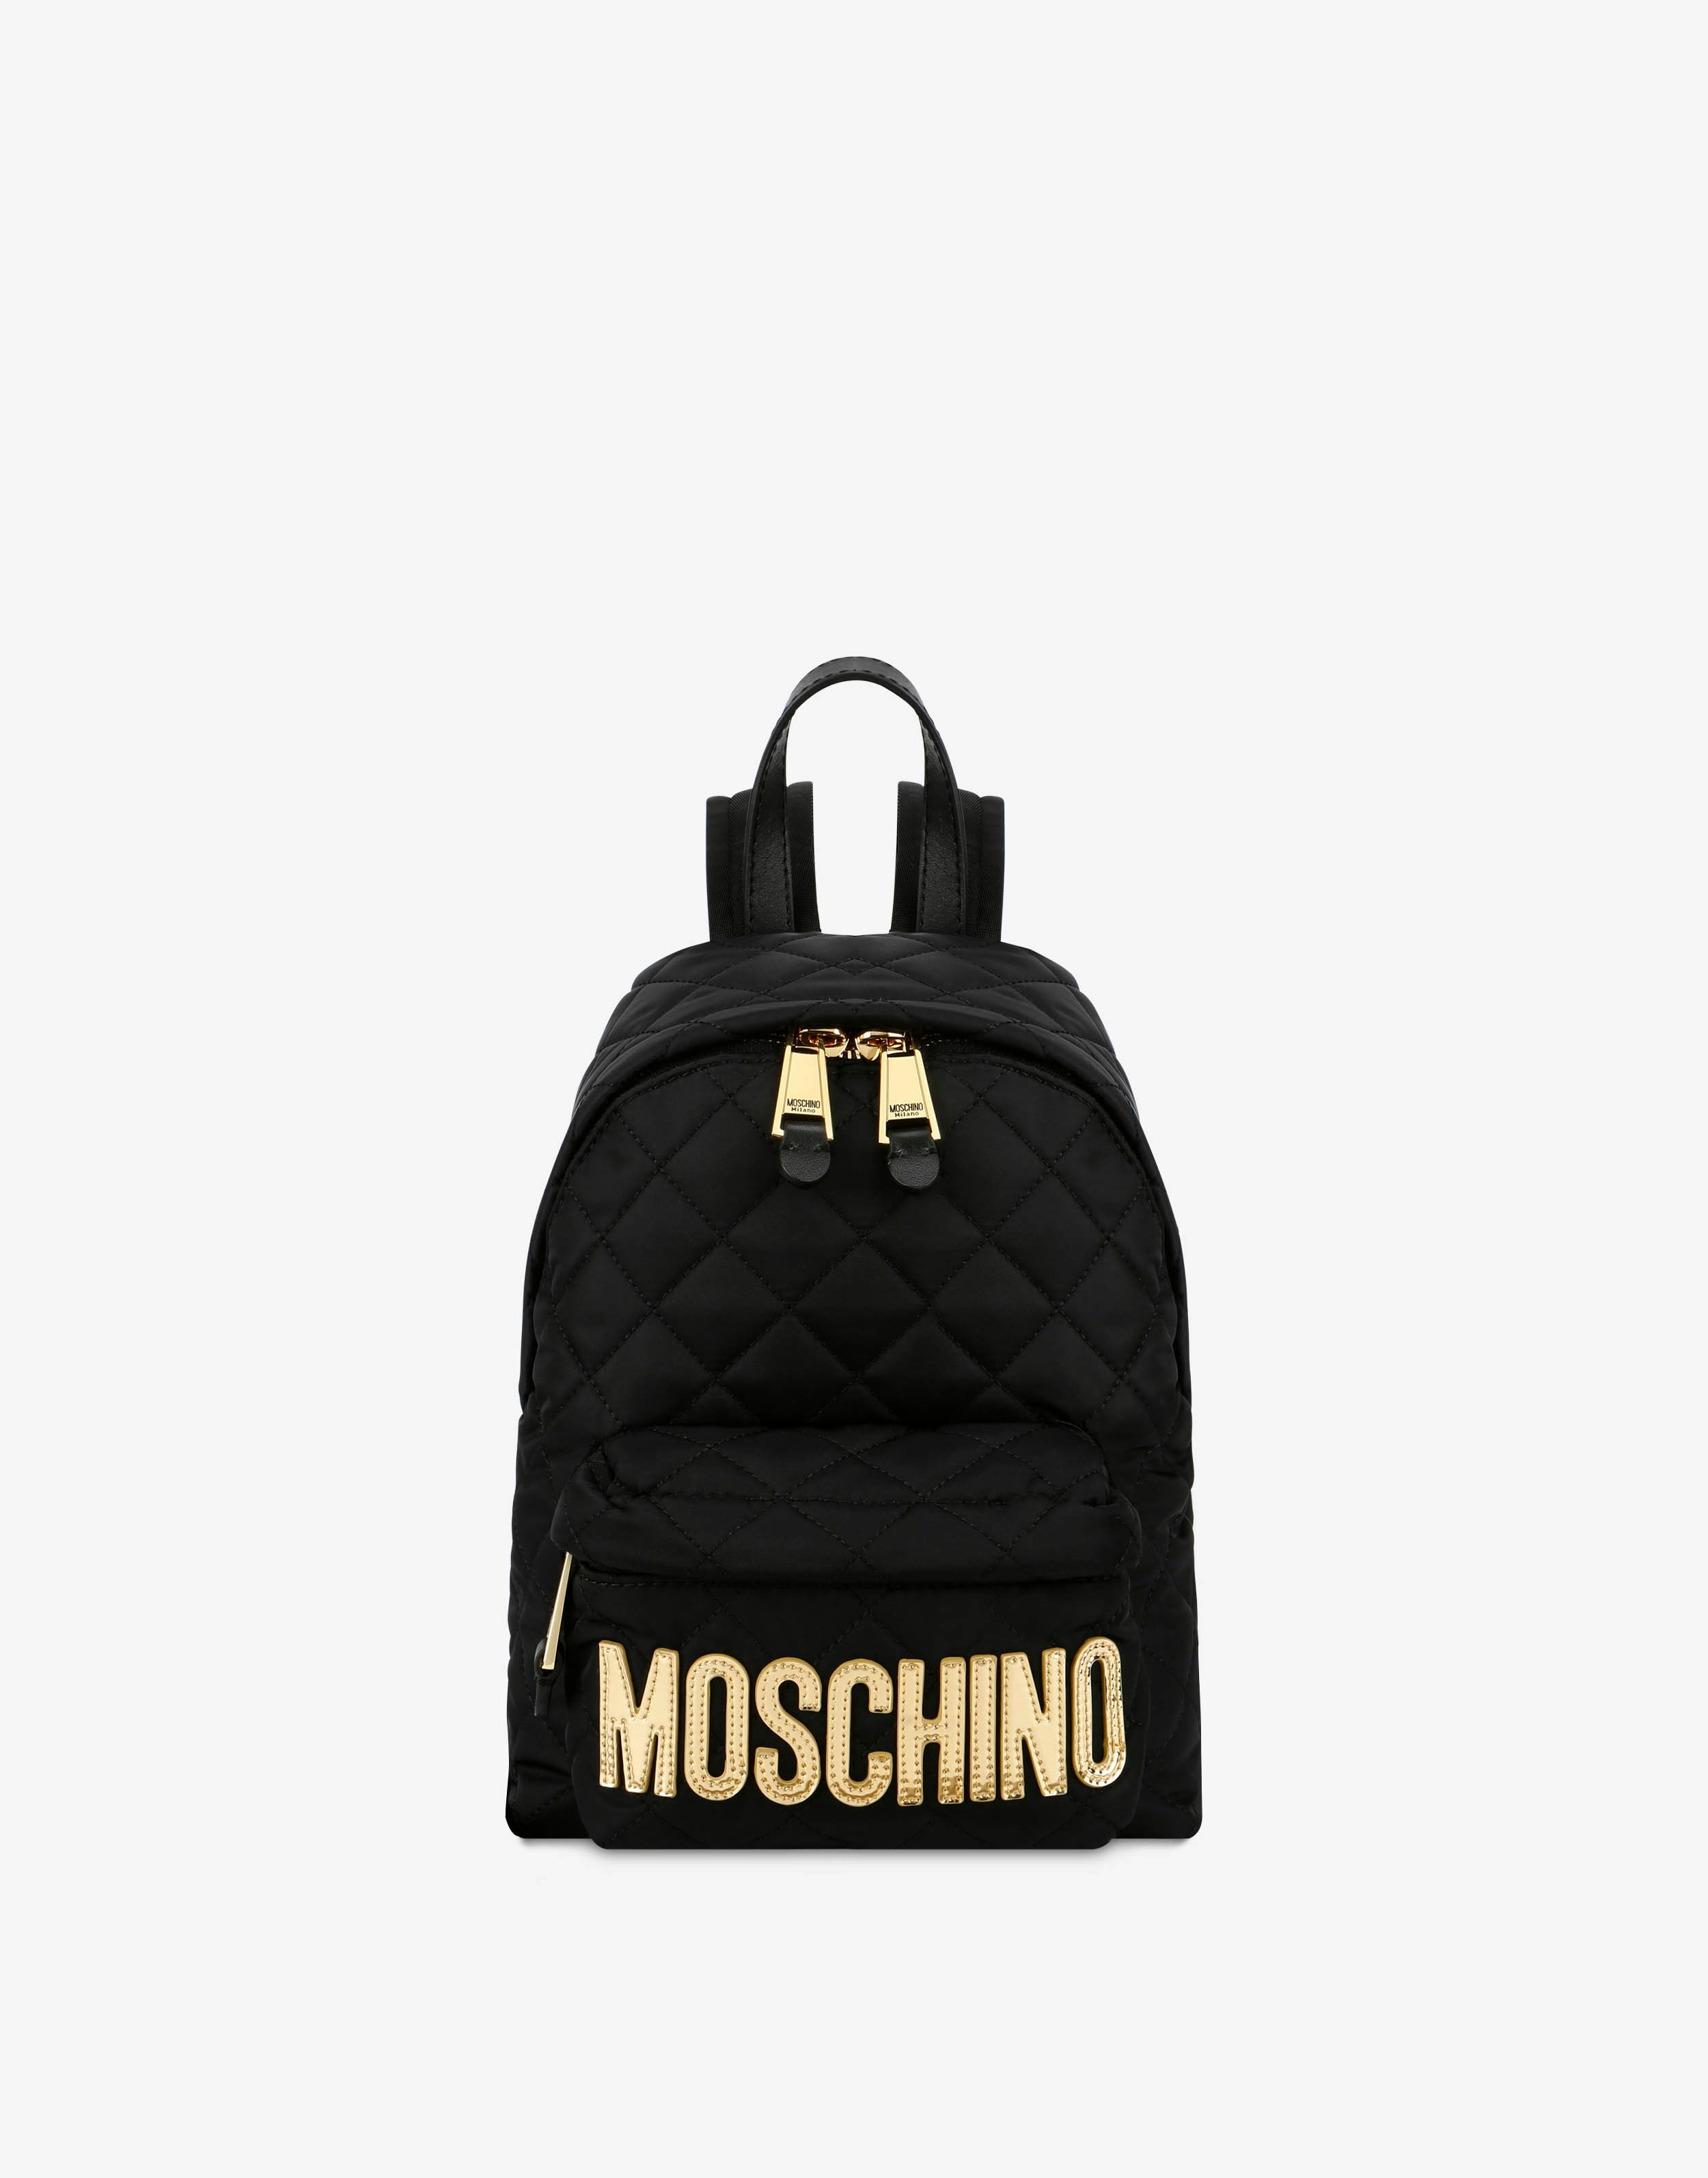 特価正規品Moschino bag モスキーノロゴバックパック バッグ